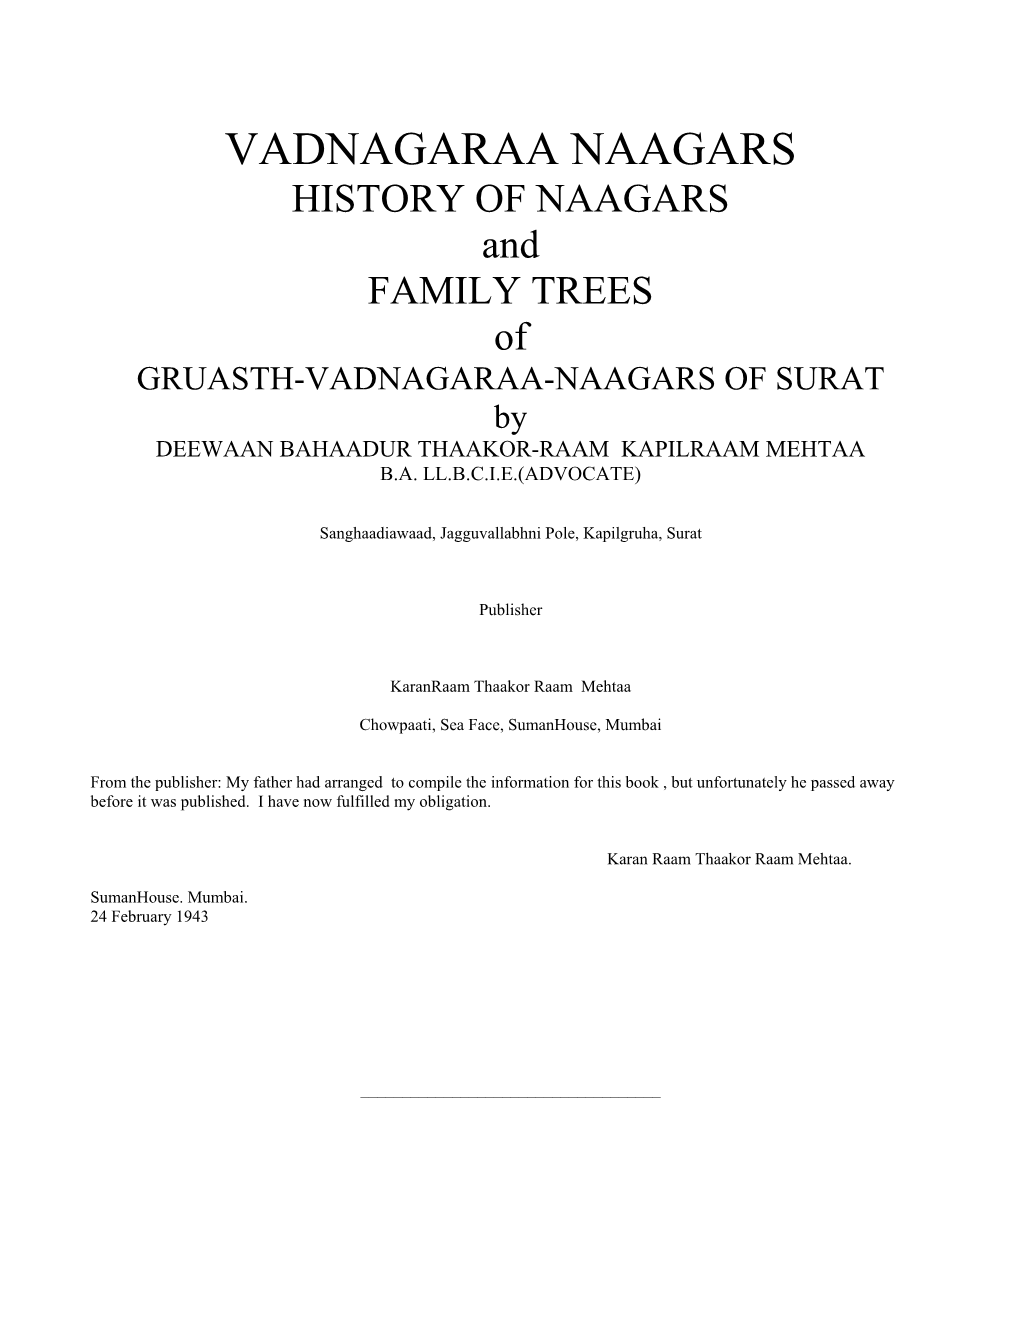 VADNAGARAA NAAGARS HISTORY of NAAGARS and FAMILY TREES of GRUASTH-VADNAGARAA-NAAGARS of SURAT by DEEWAAN BAHAADUR THAAKOR-RAAM KAPILRAAM MEHTAA B.A